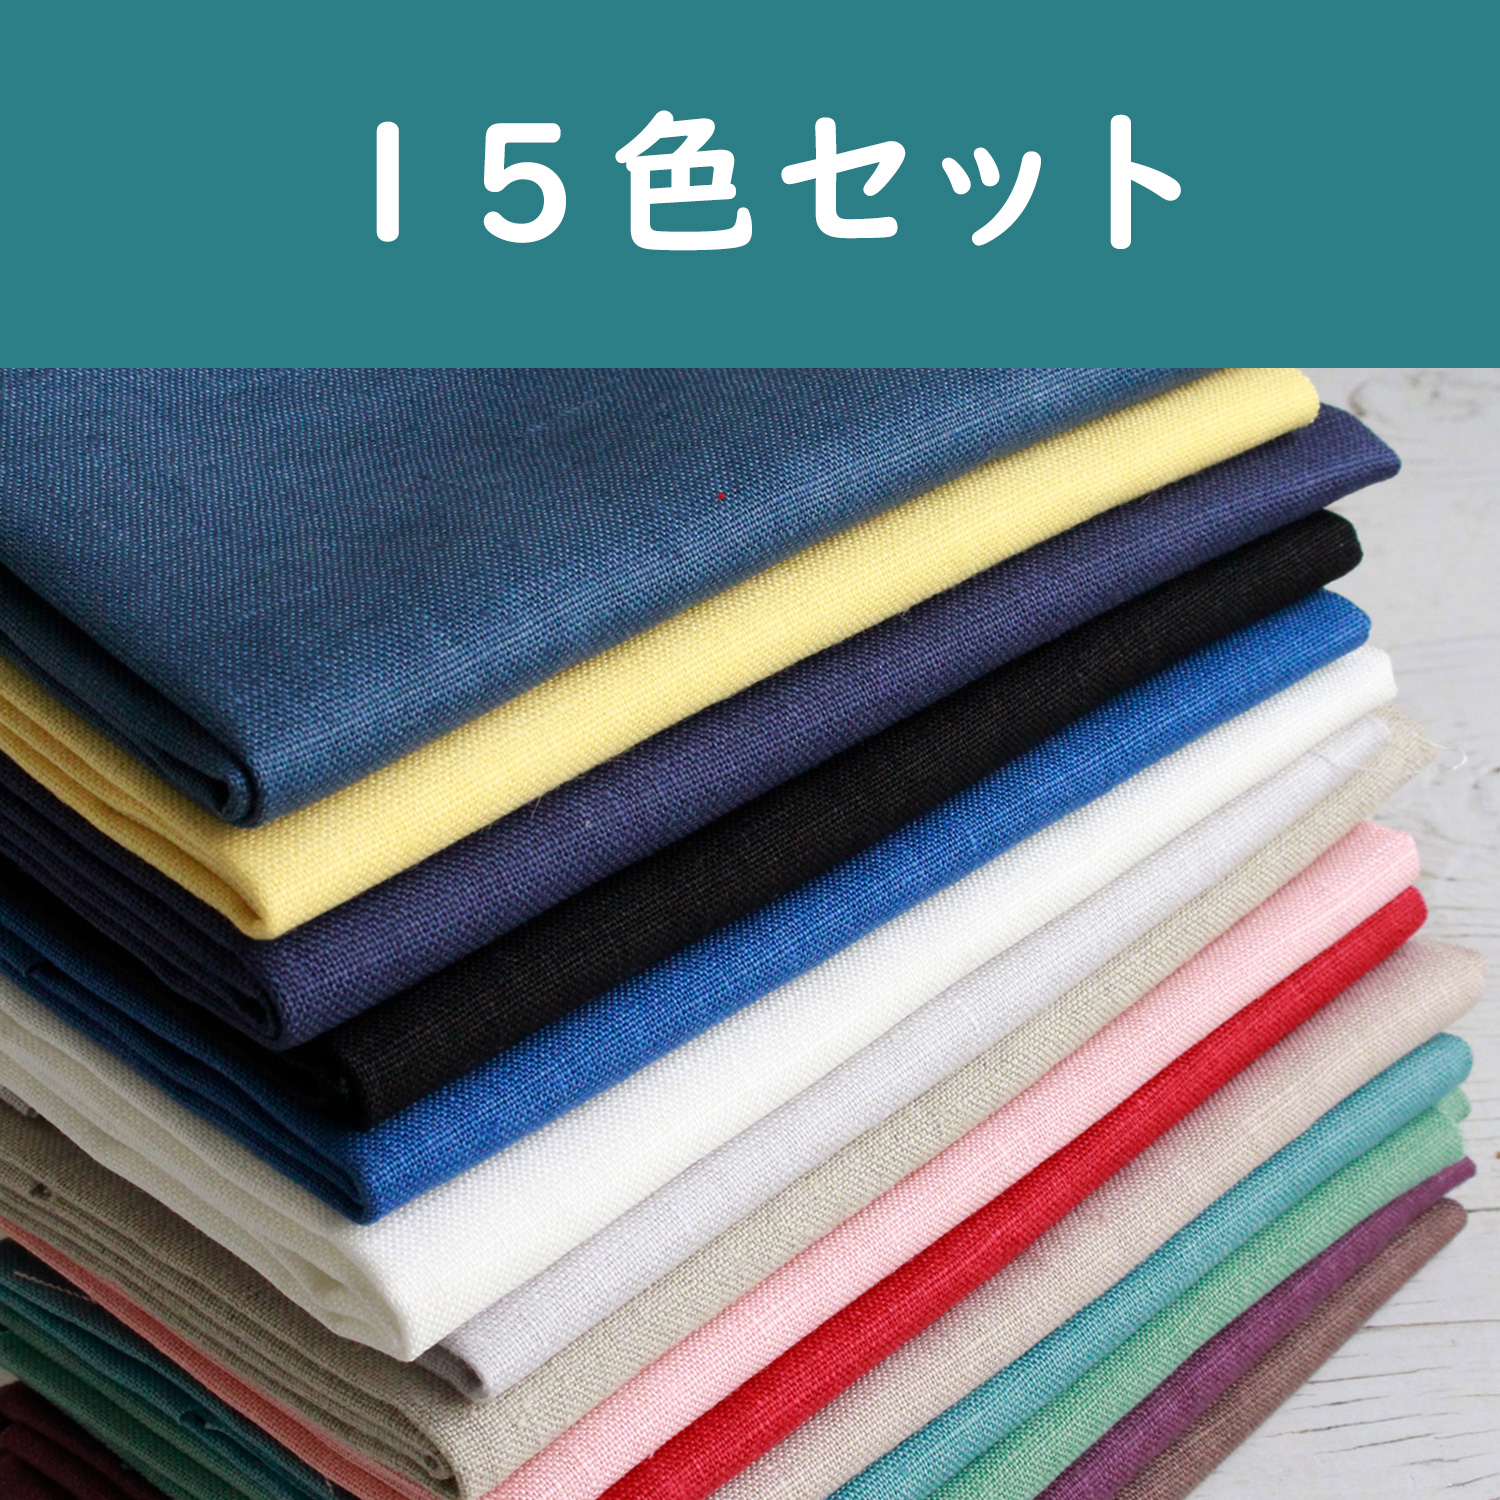 KLC3919-15SET　Linen Cloth for Embroidery 15colors set　approx.50×68cm　1sheet/pack×15colors set　(set)